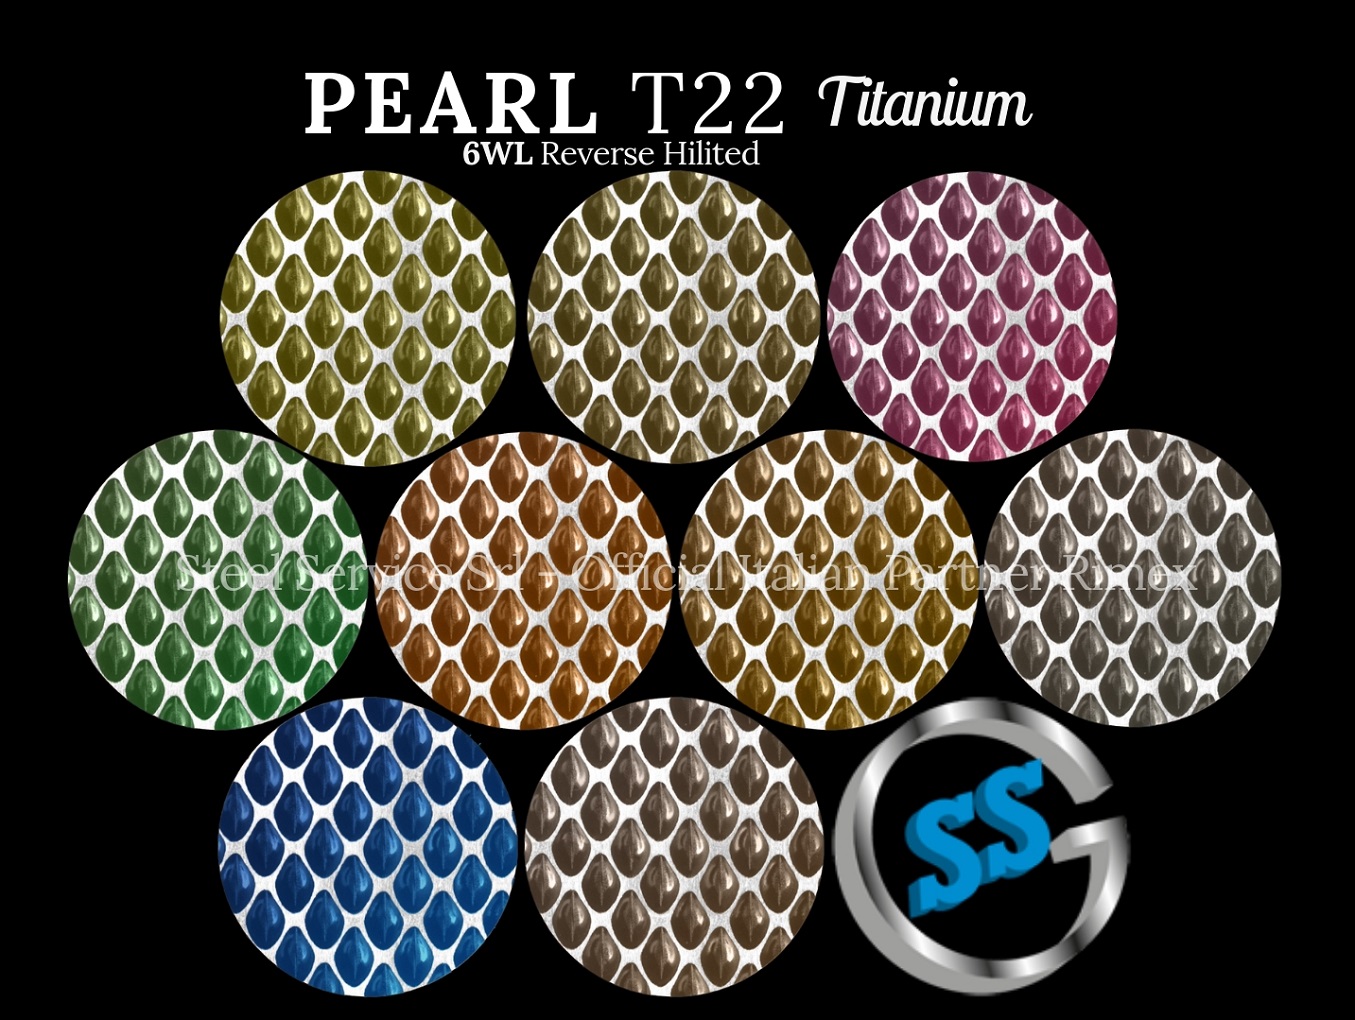 Lamiere bugnate colorate, Palette varianti colorate inox T22 Titanium delle lamiere inox 6WL PEARL, inox rigidizzato 6WL PEARL